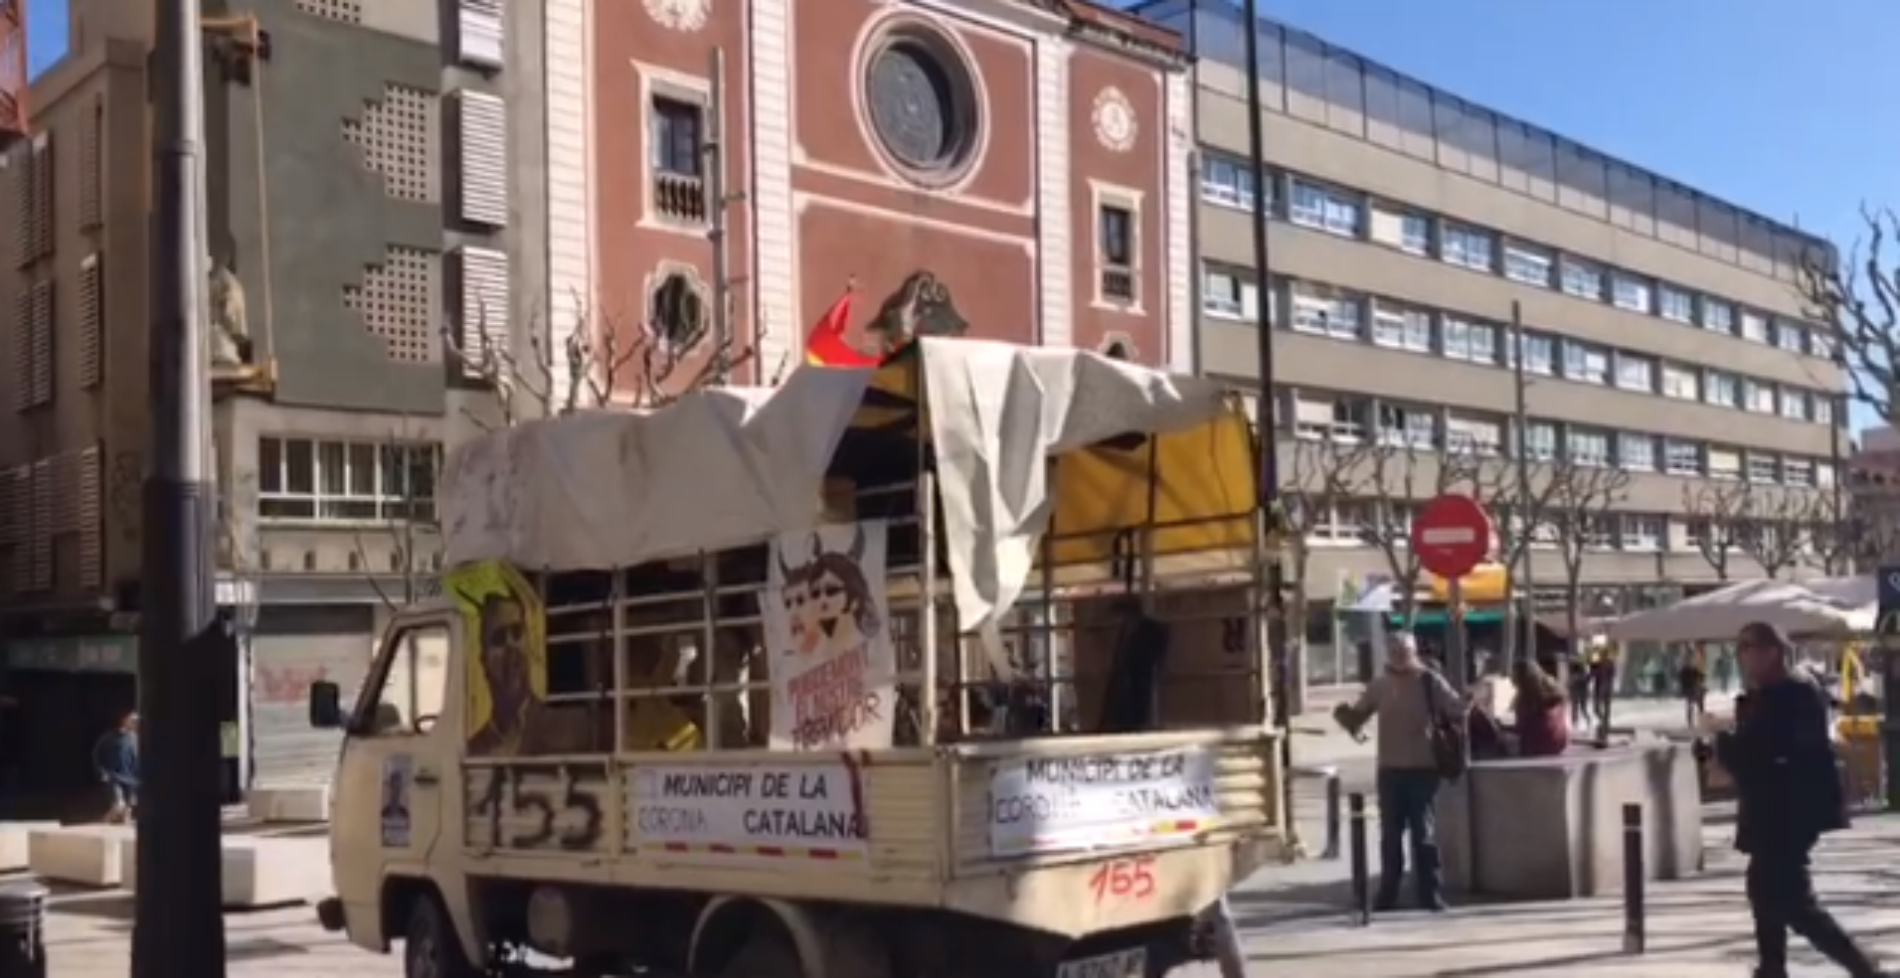 Un unionista provoca incidentes con una furgoneta en el centro de Mataró